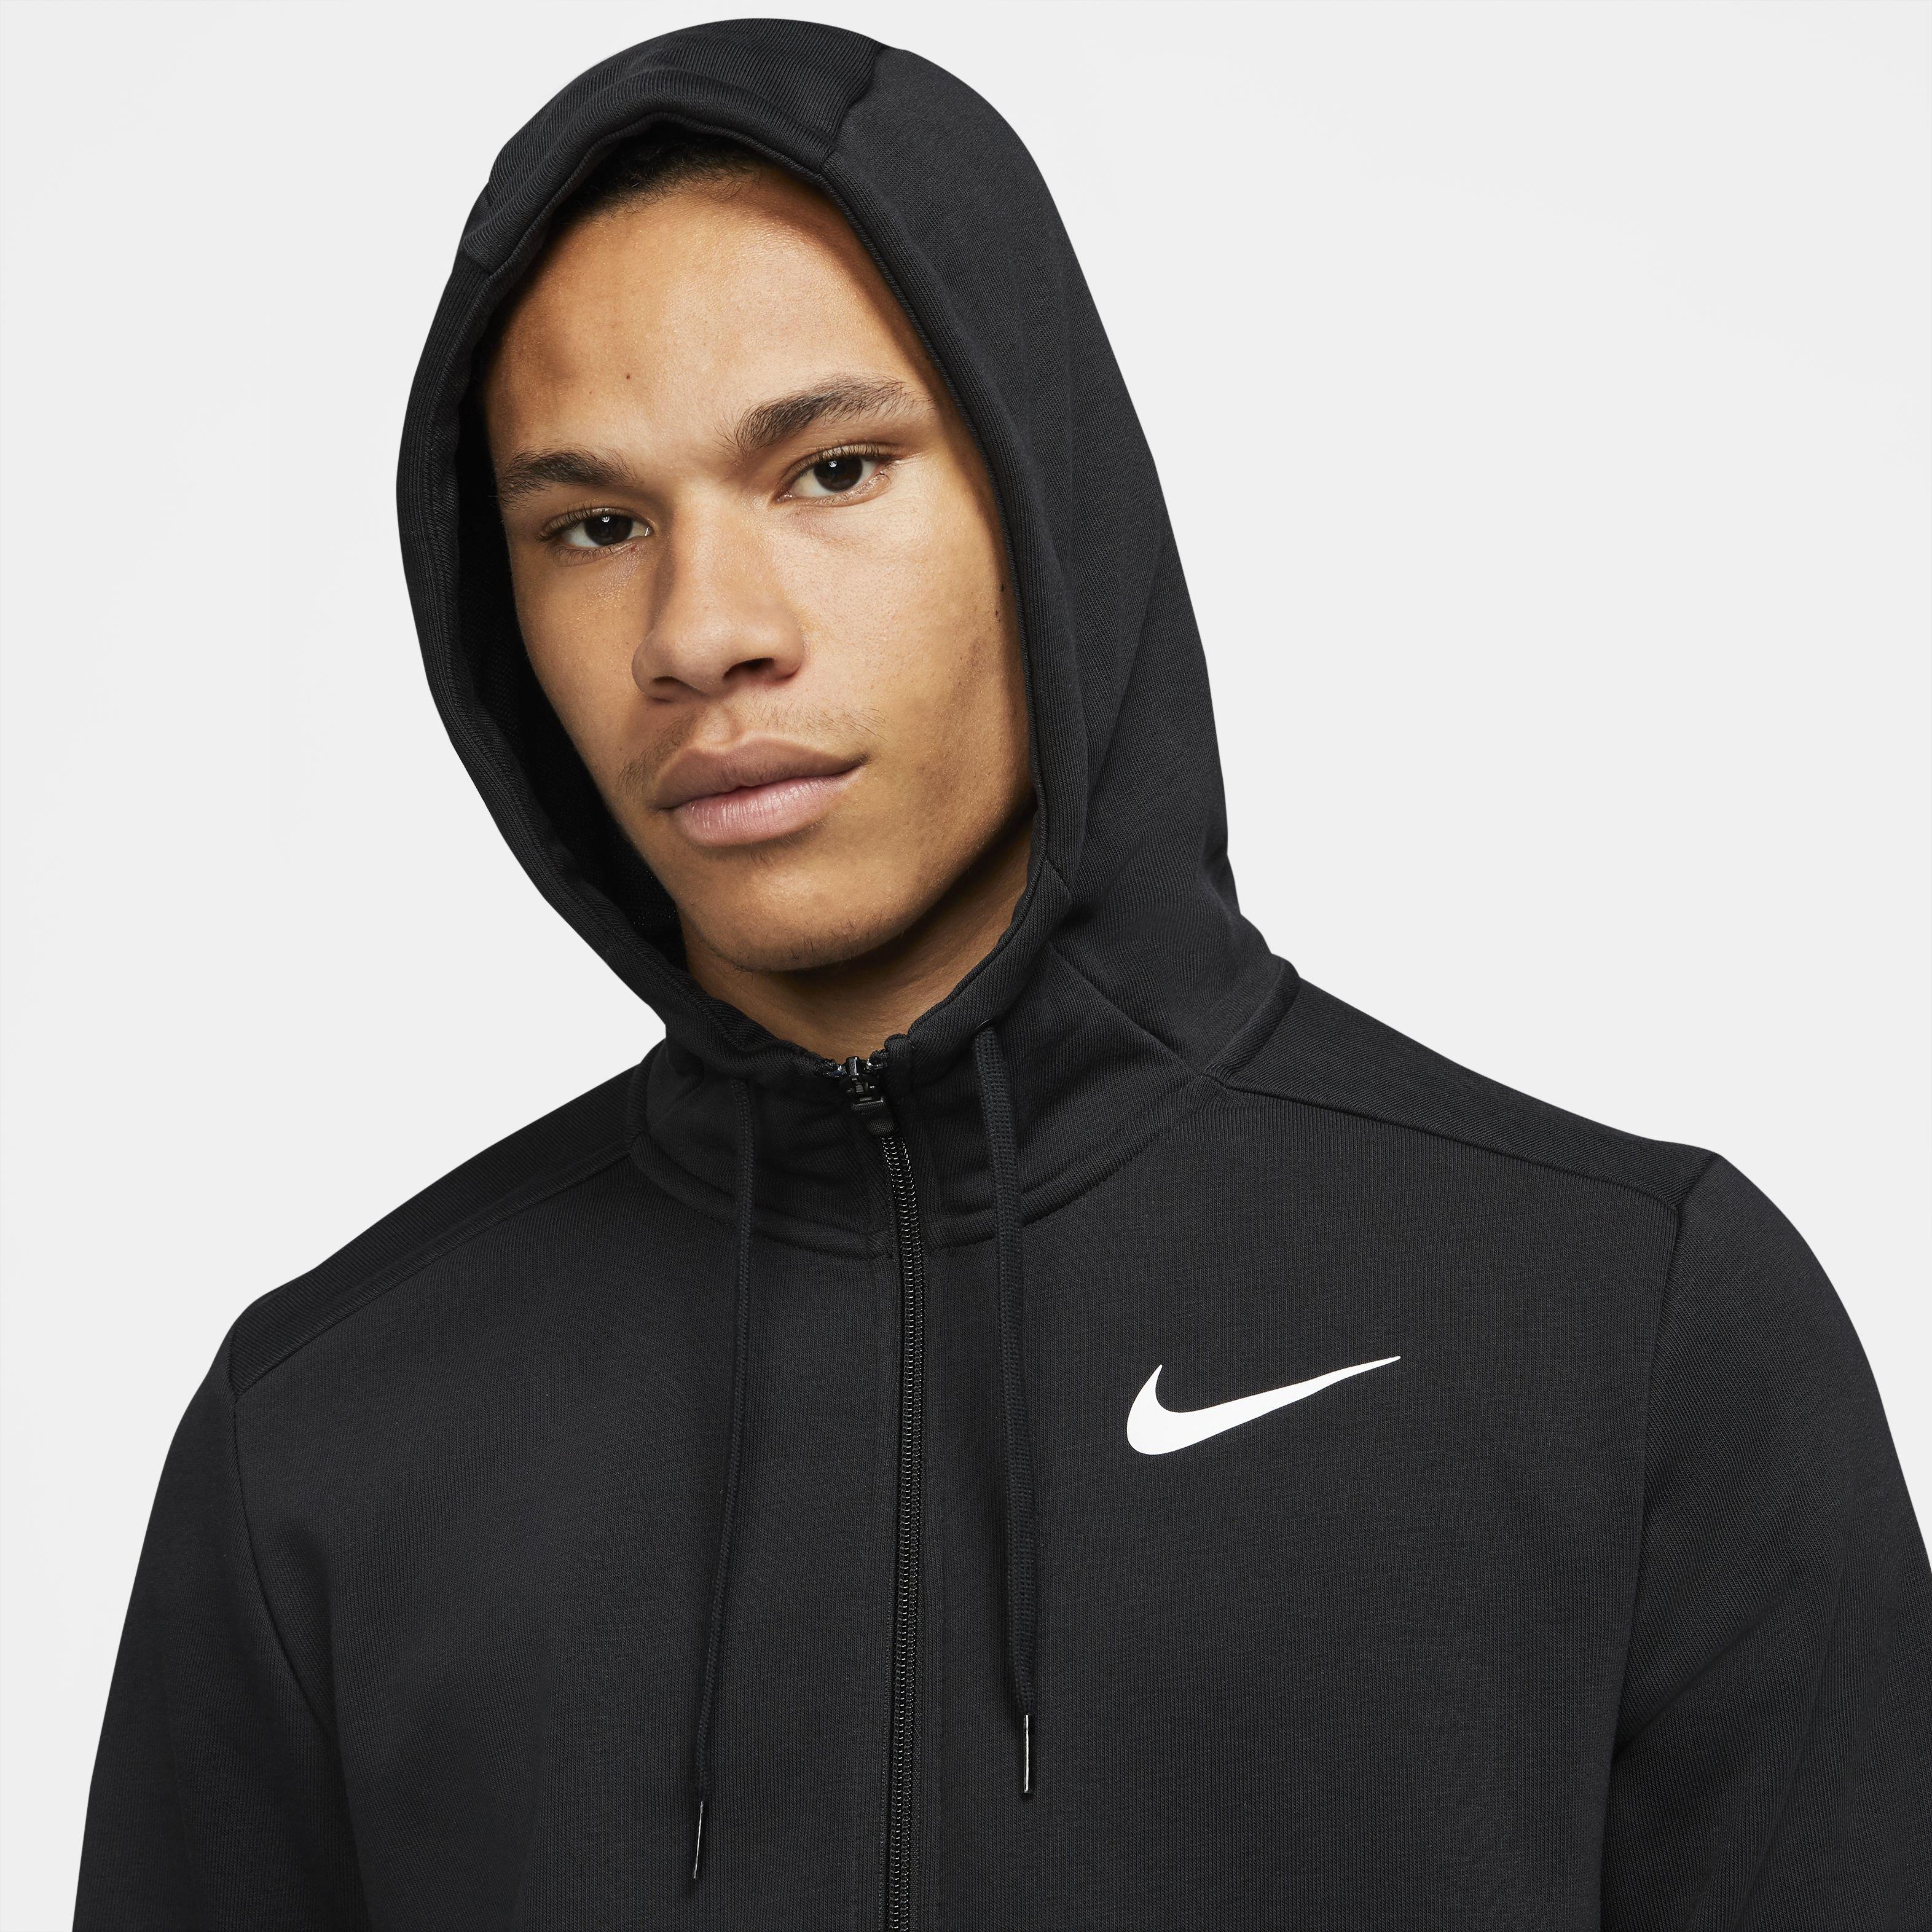 lavendel Beschaven Hub Nike Men's Dri-FIT Full Zip Fleece Hoodie